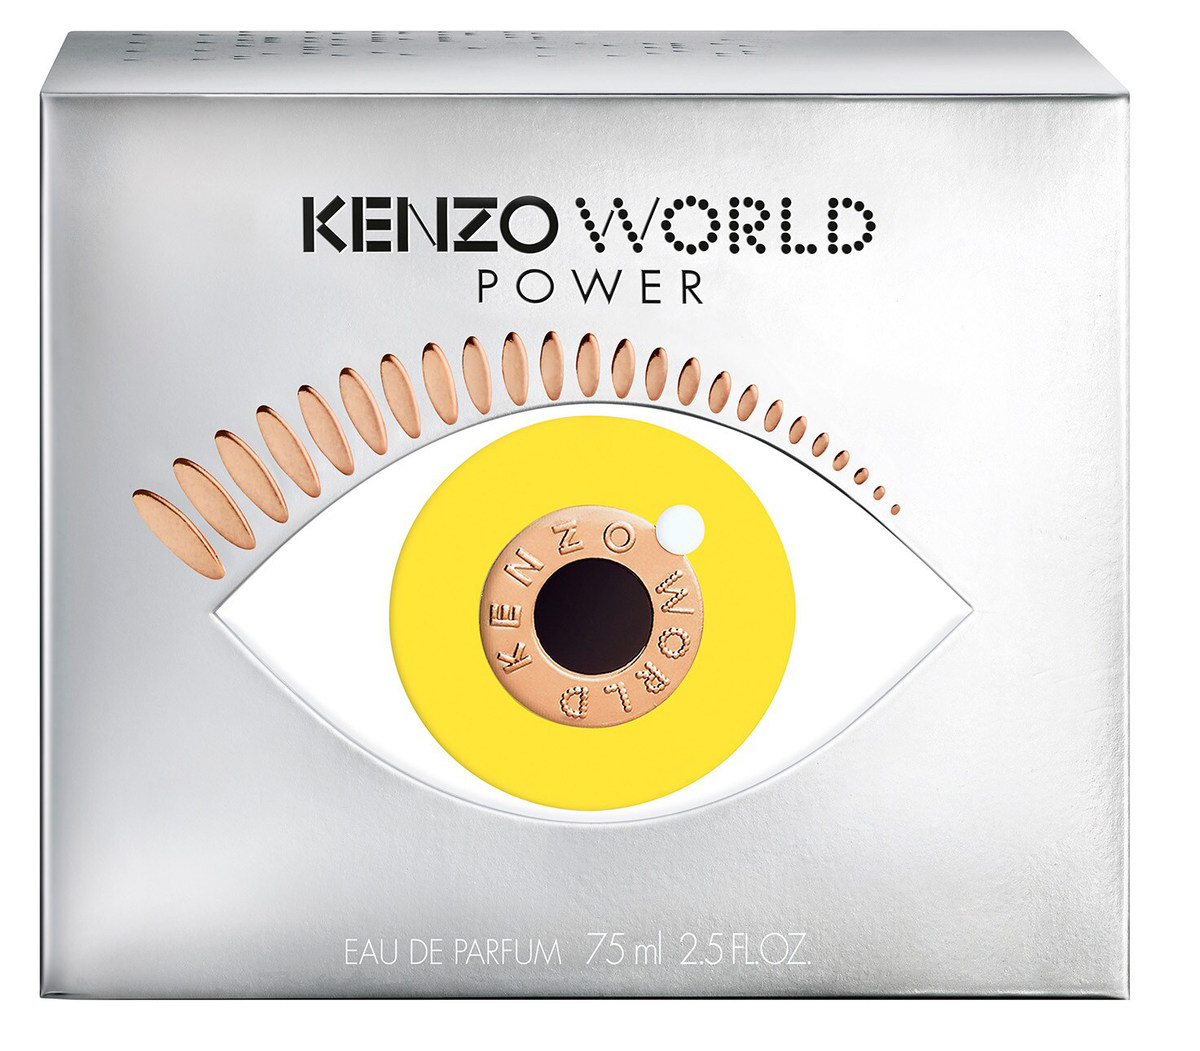 Kenzo - World Power Eau & » de Reviews de Perfume Parfum) Facts (Eau Parfum